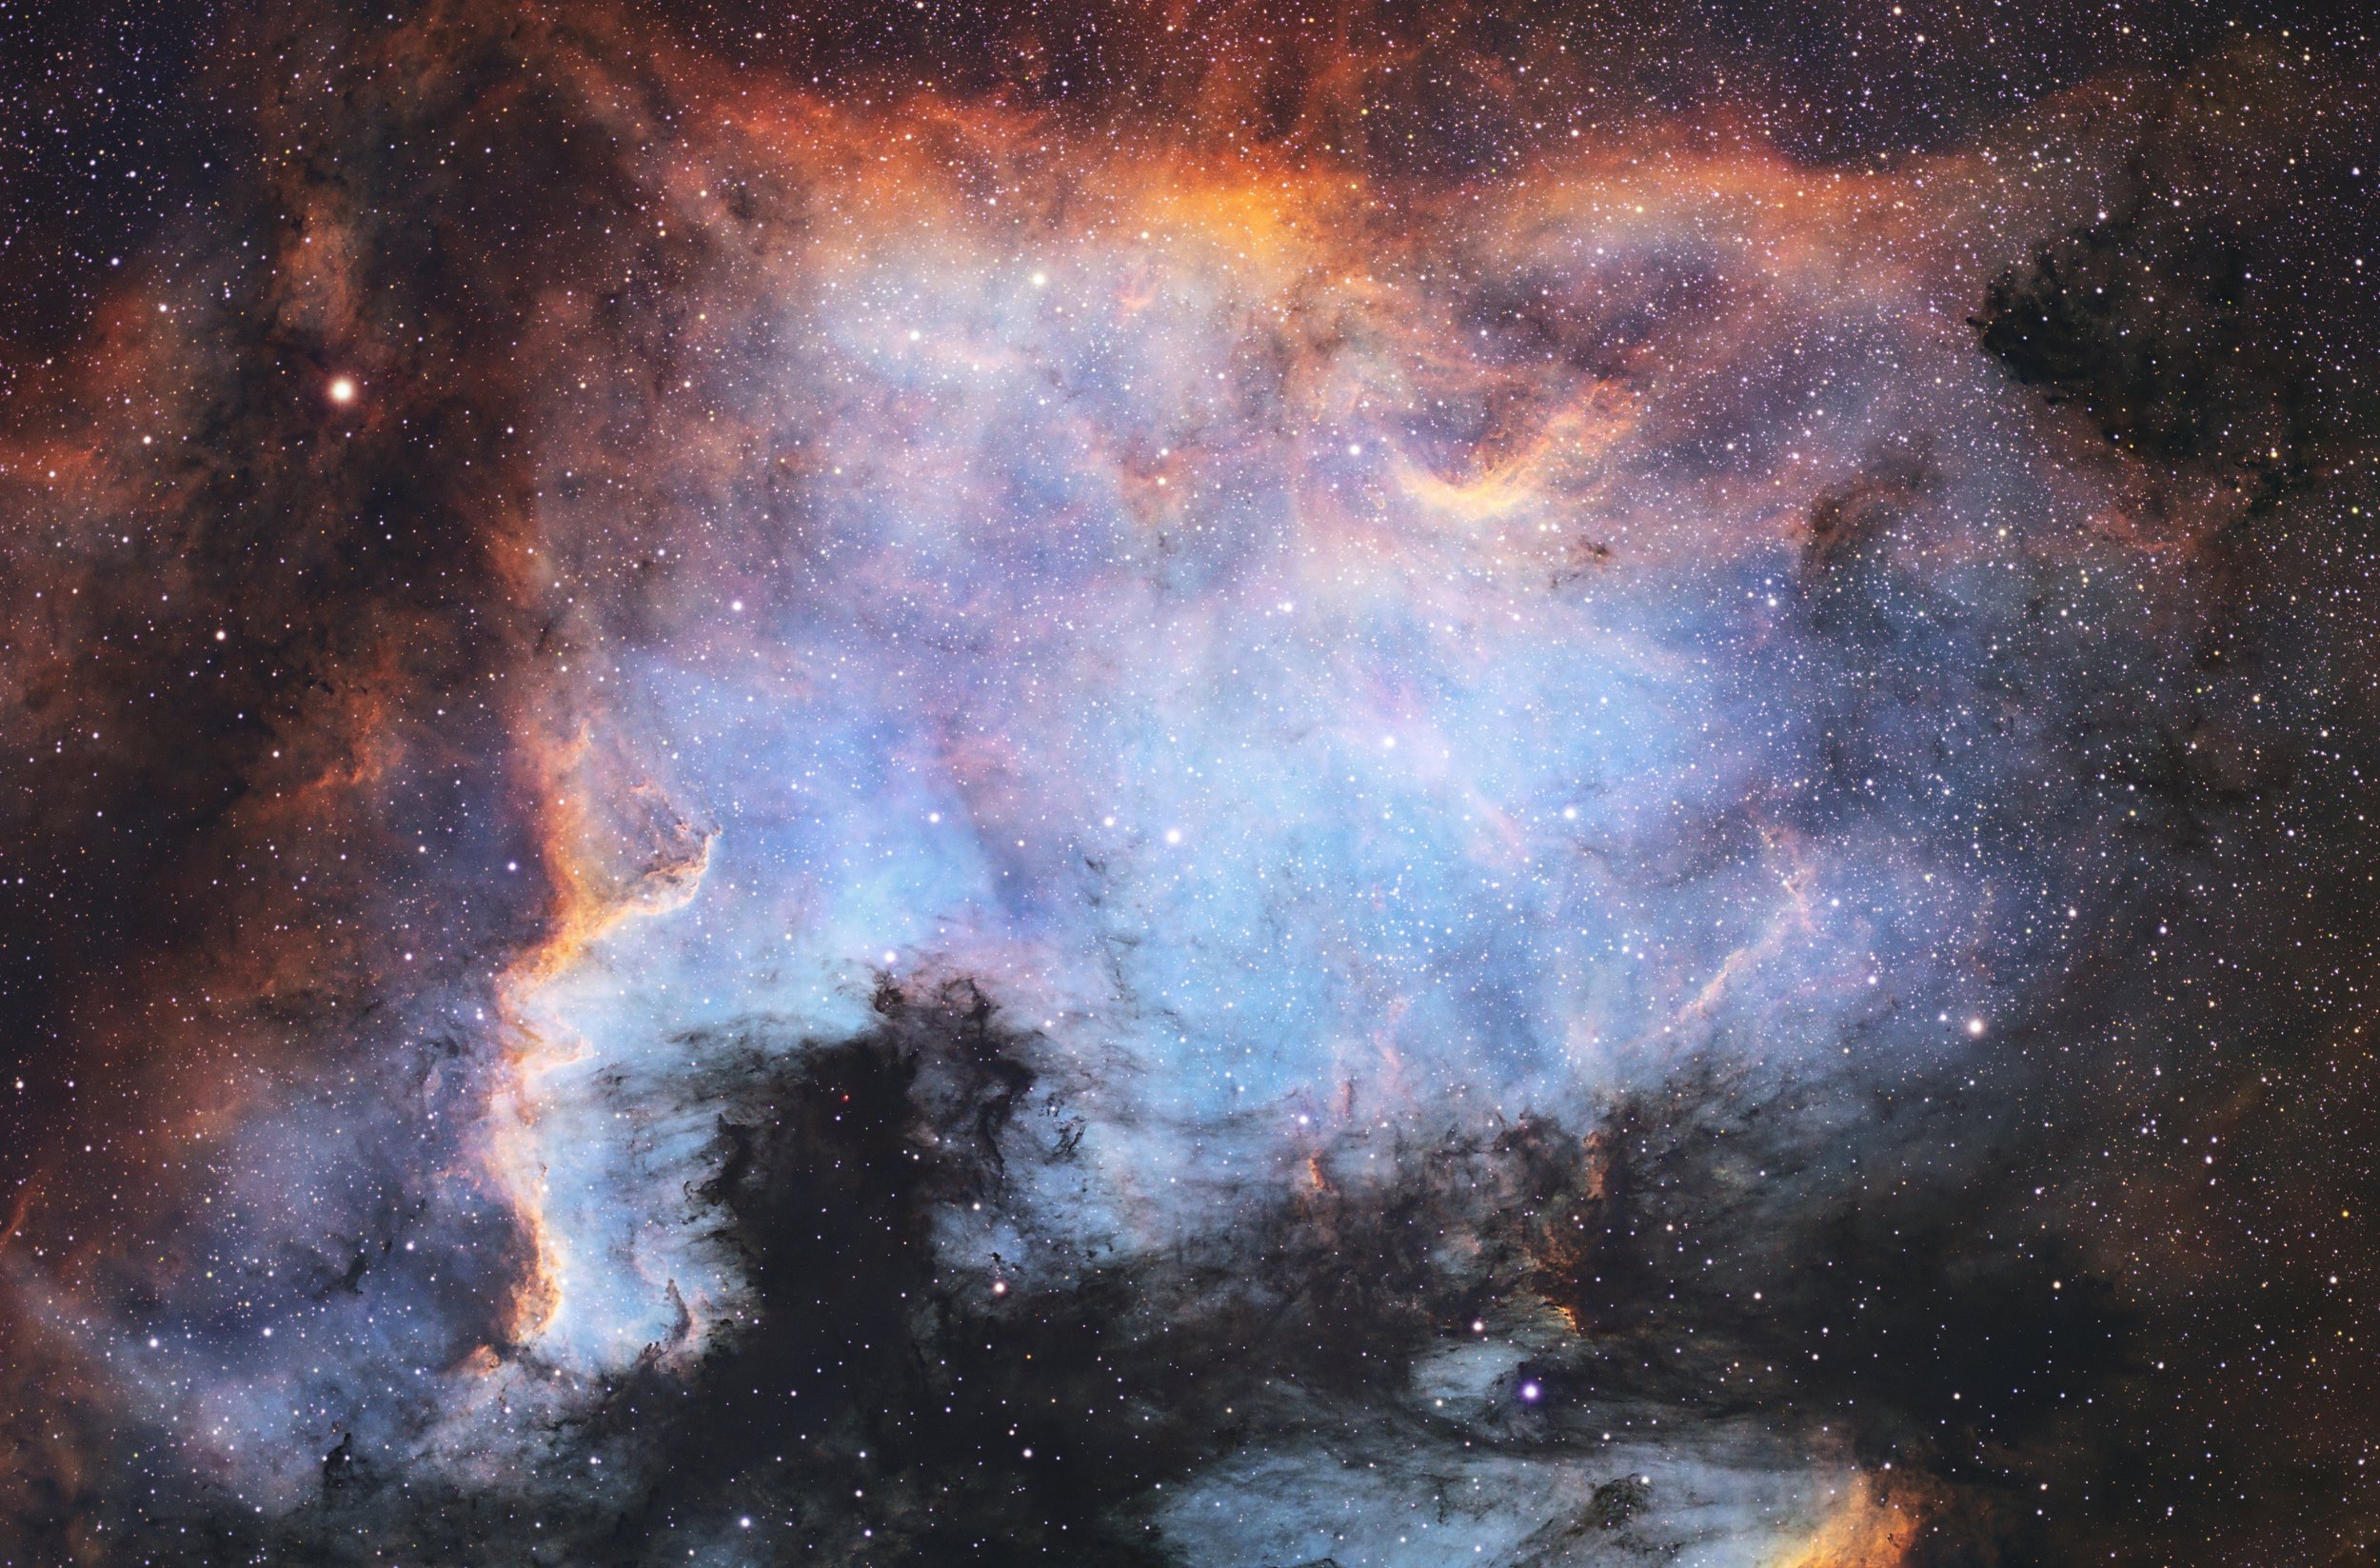 North American Nebula I